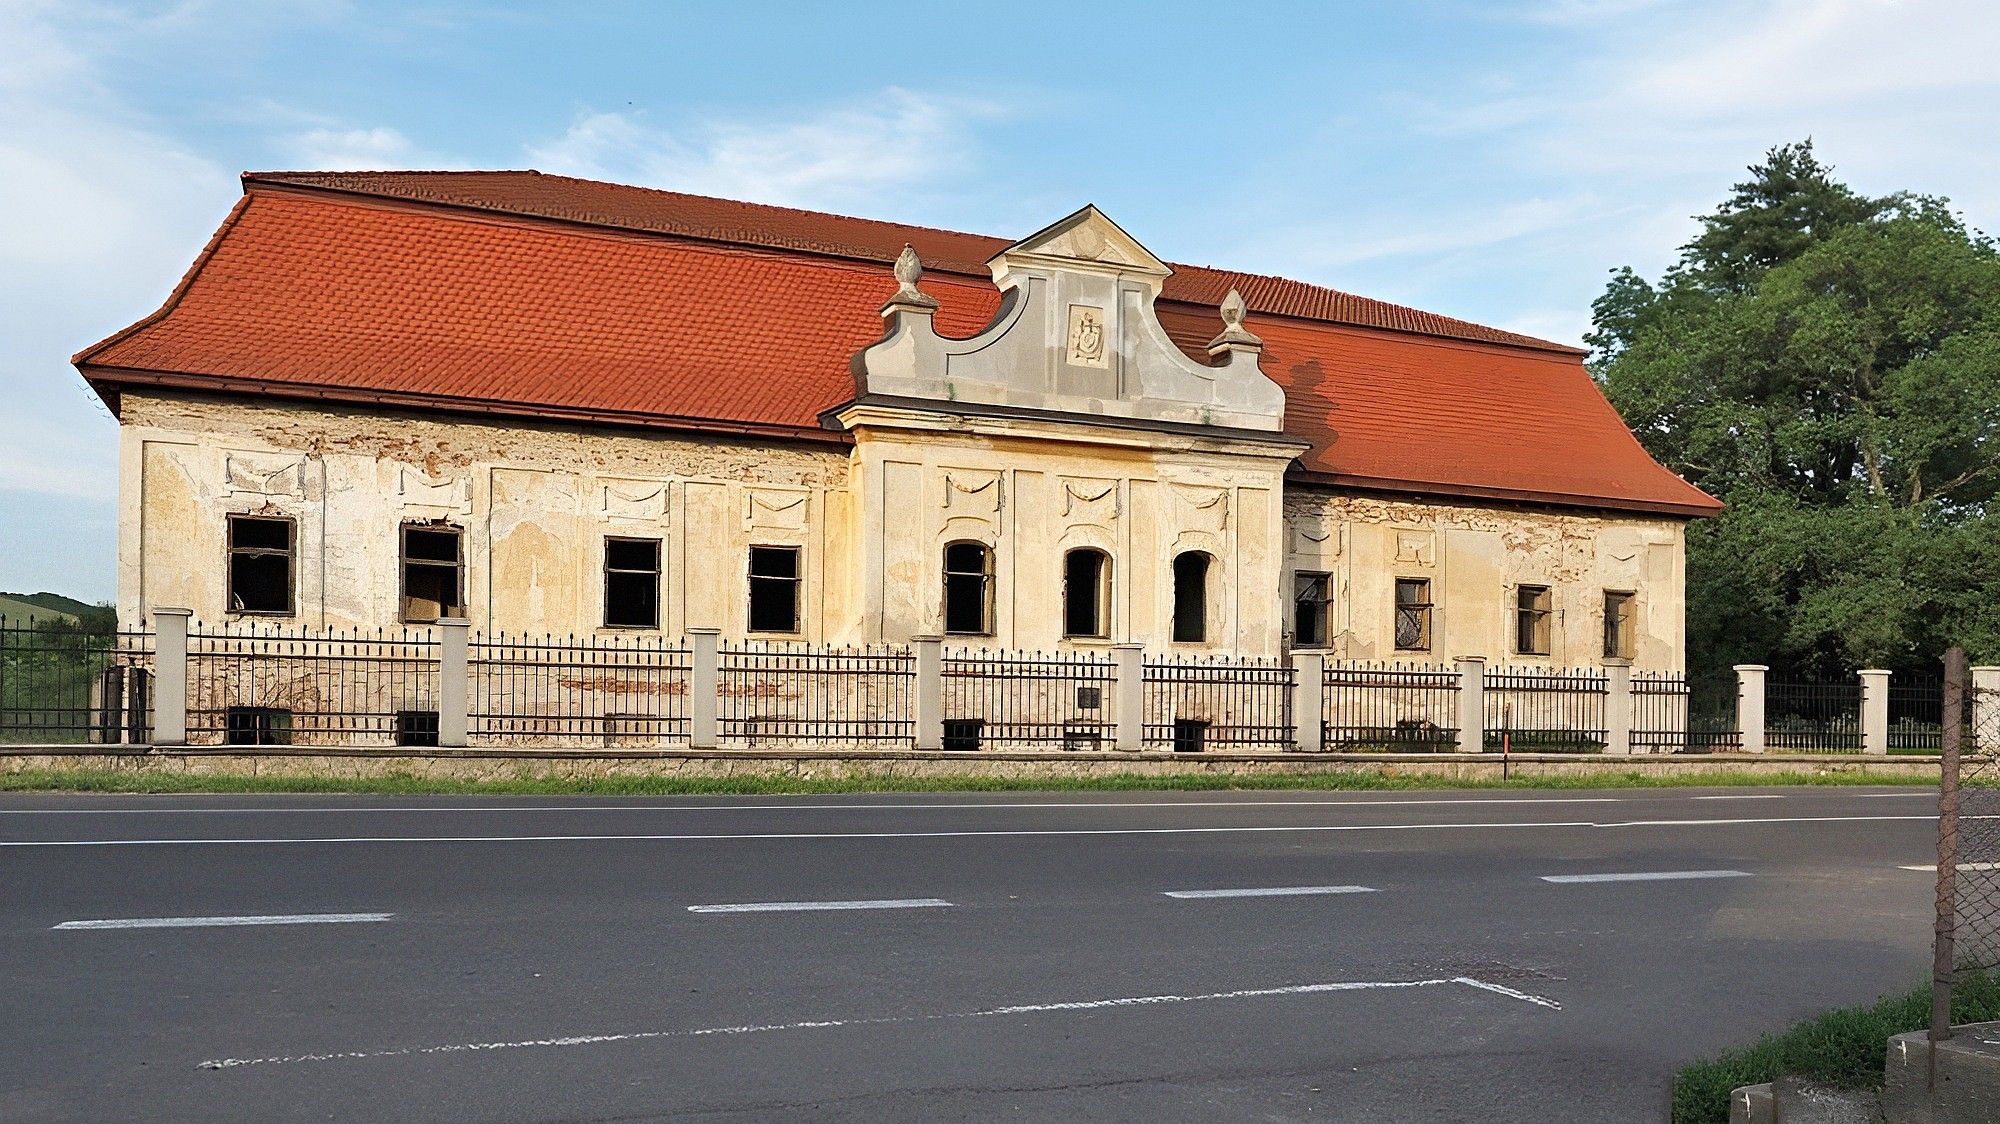 Fotos Entwicklungsprojekt in der Mittelslowakei: Schloss des klassizistischen Barock mit Park